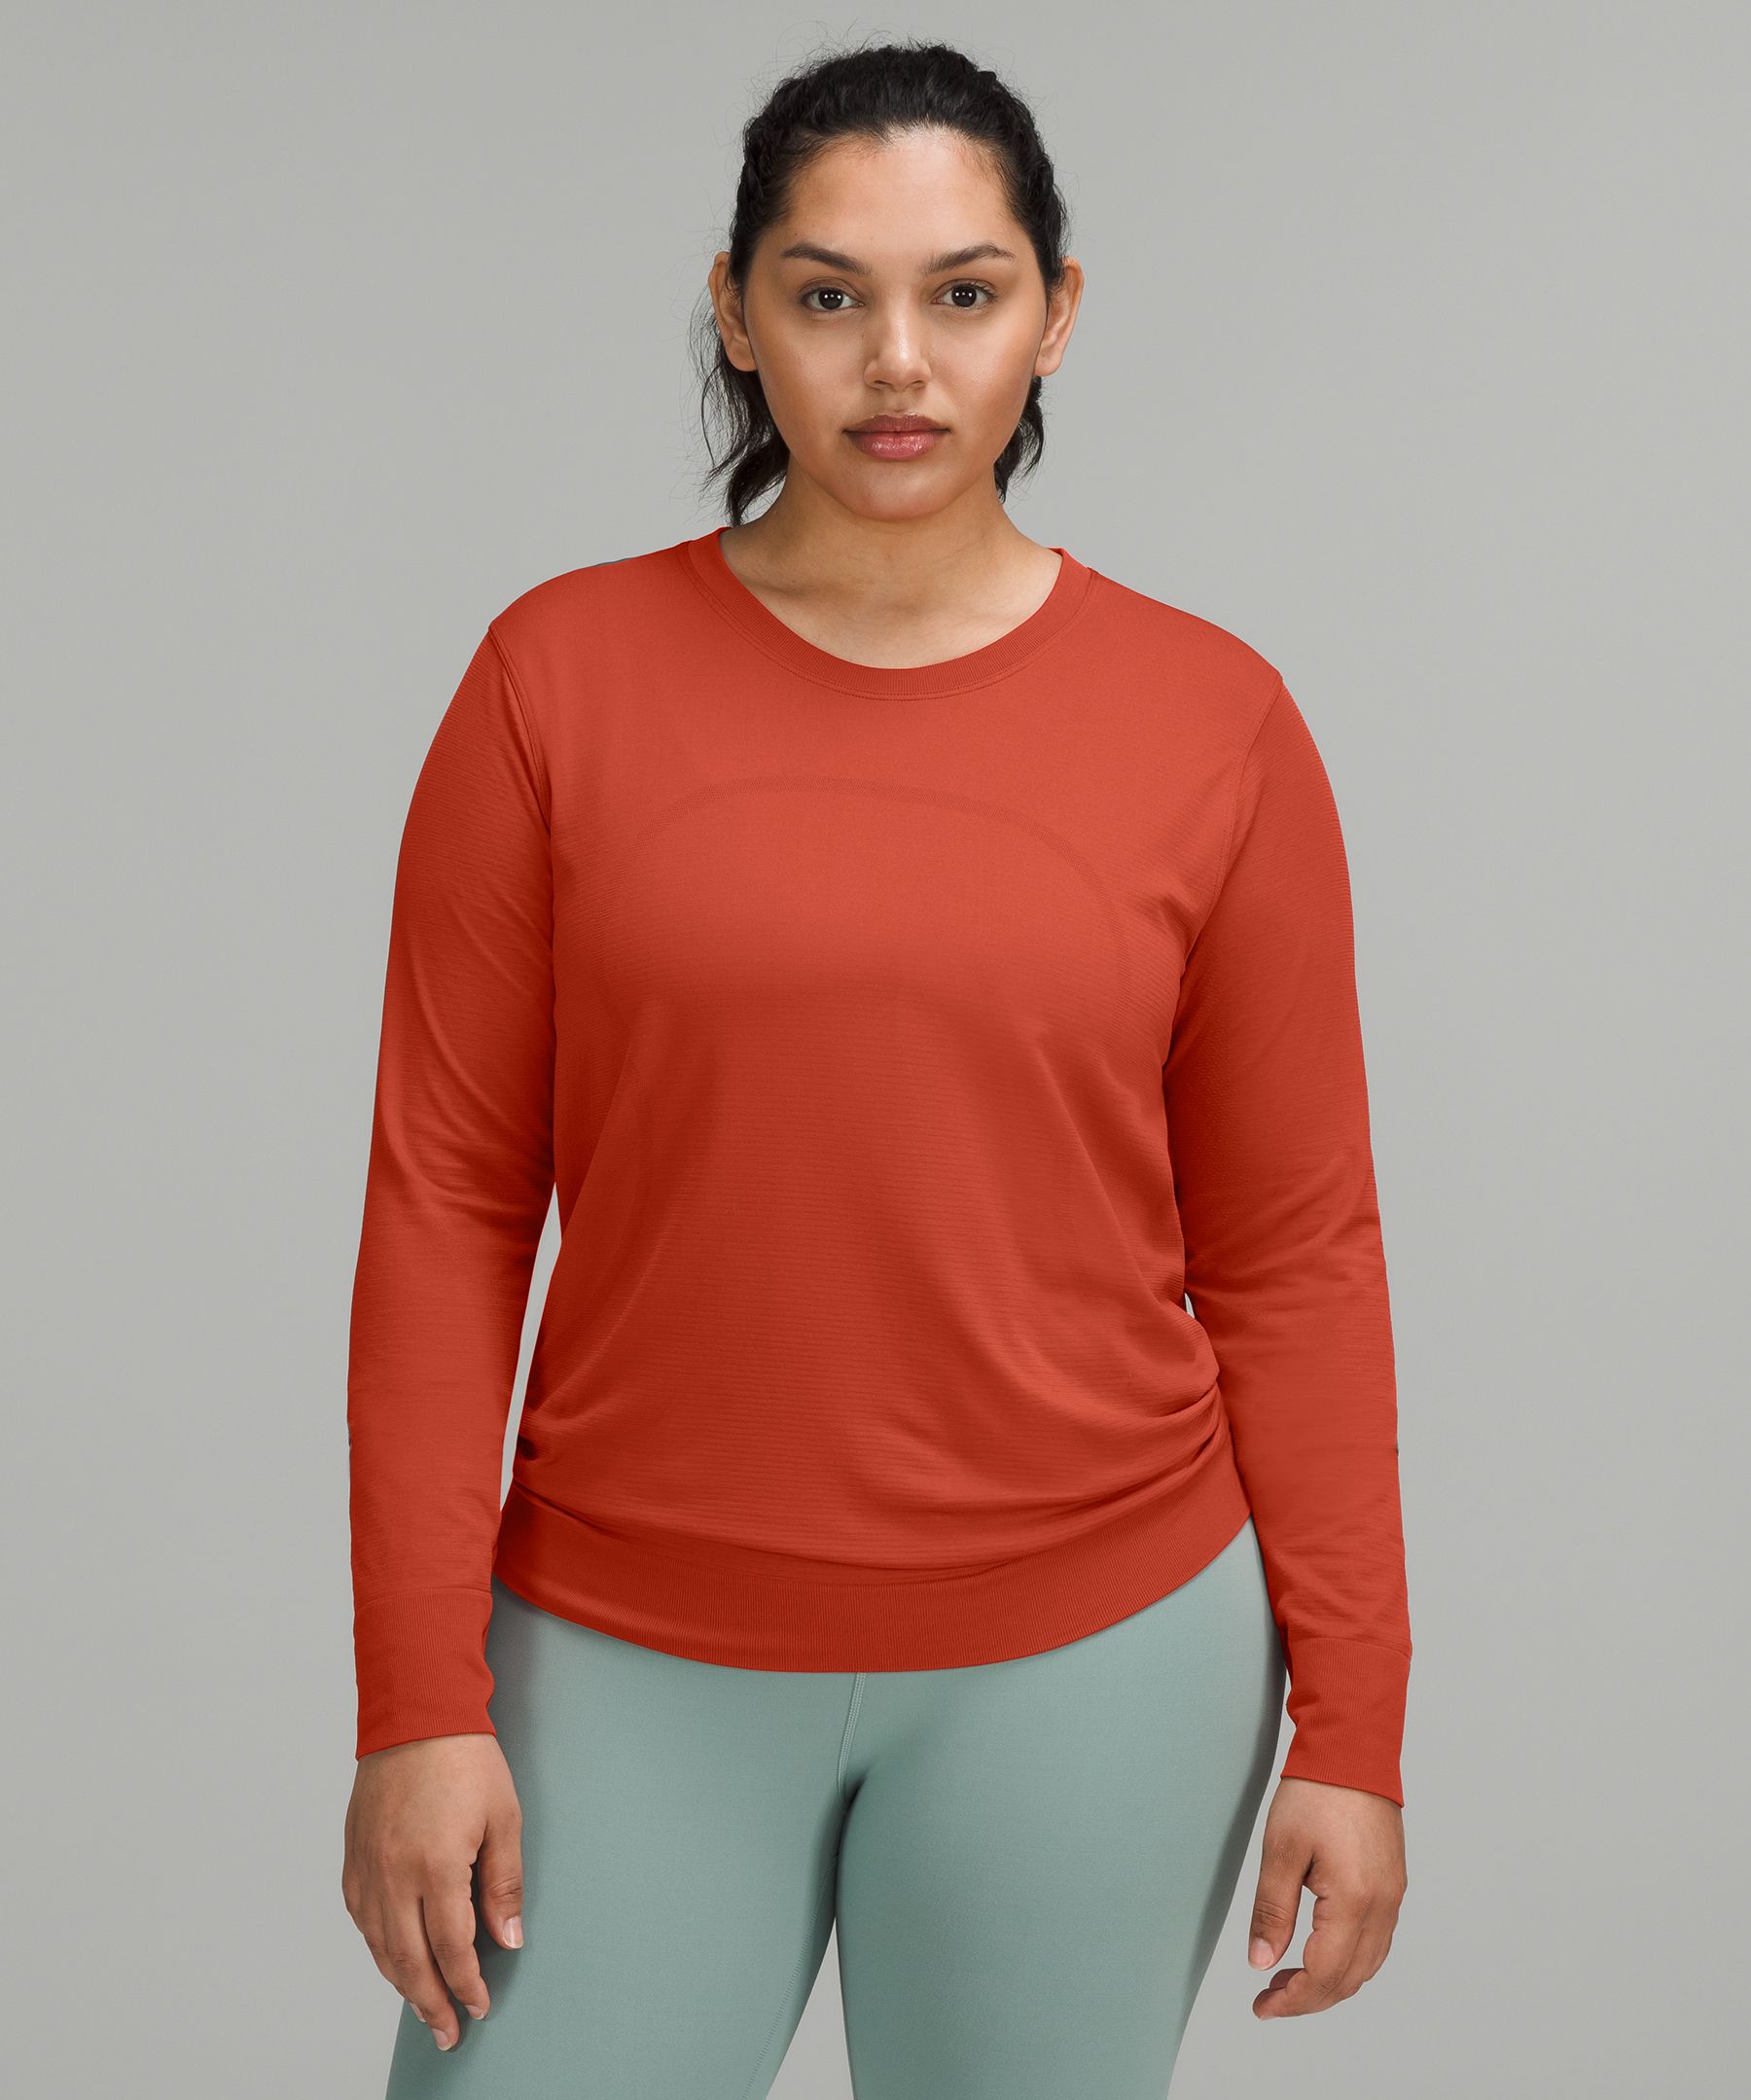 lululemon sweatshirt size - Gem